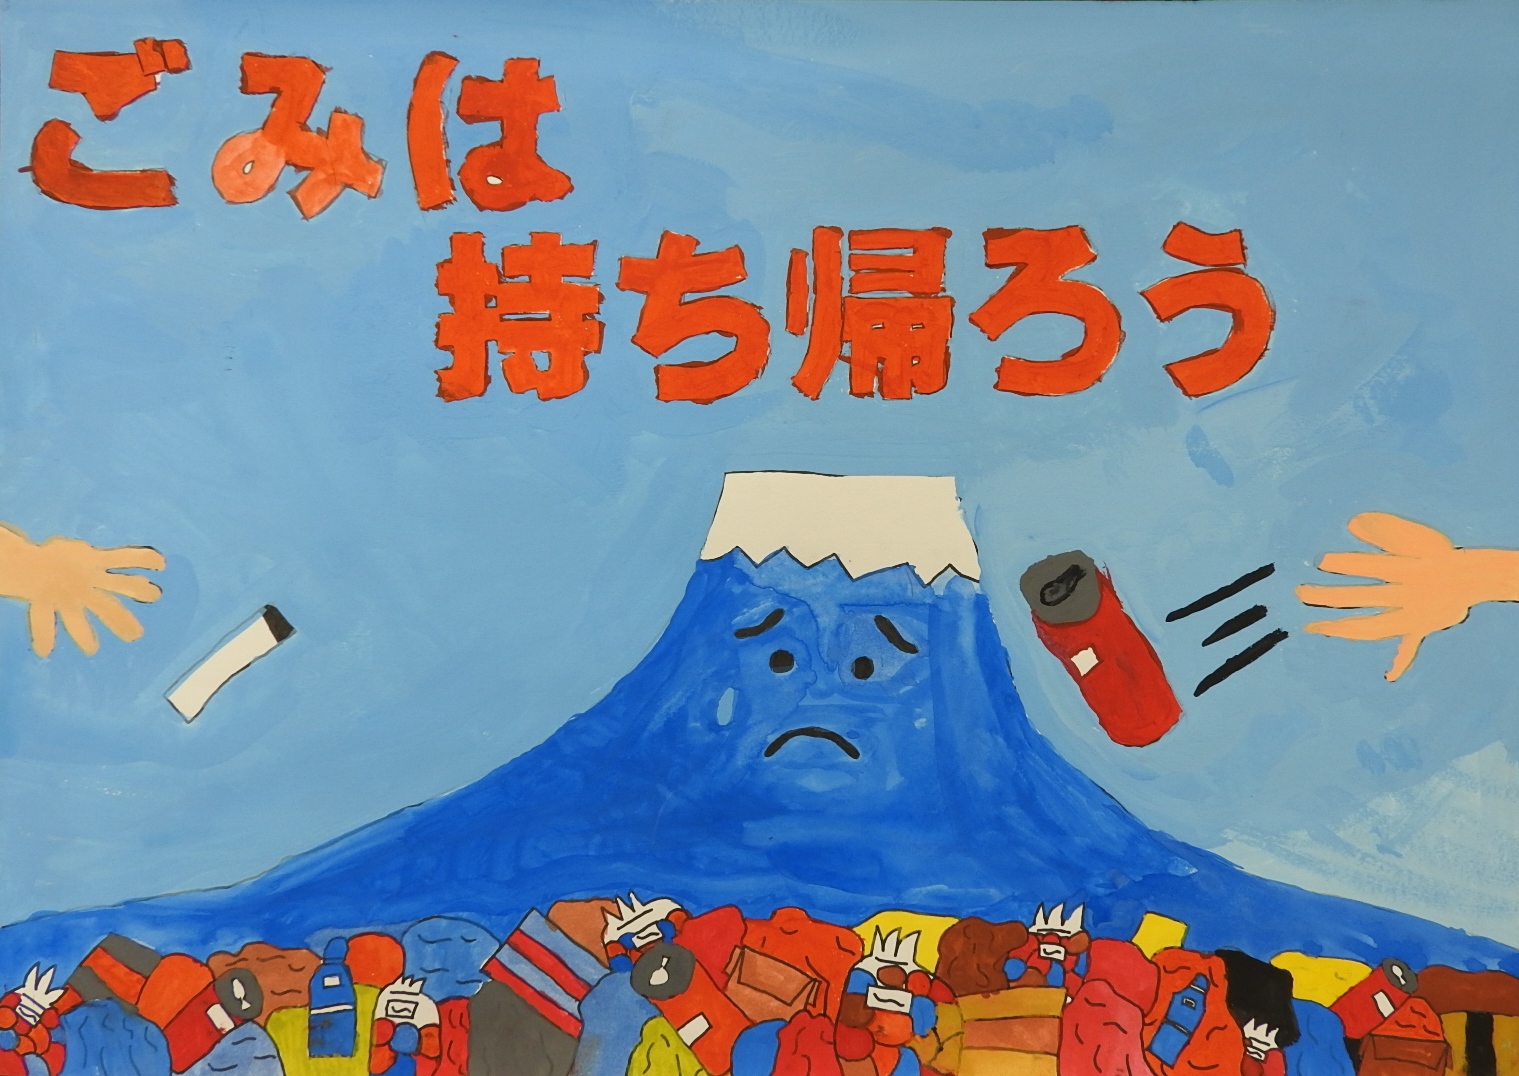 「ごみは持ち帰ろう」と書かれた、困り顔の富士山の周りに様々なゴミが捨てられているポスター